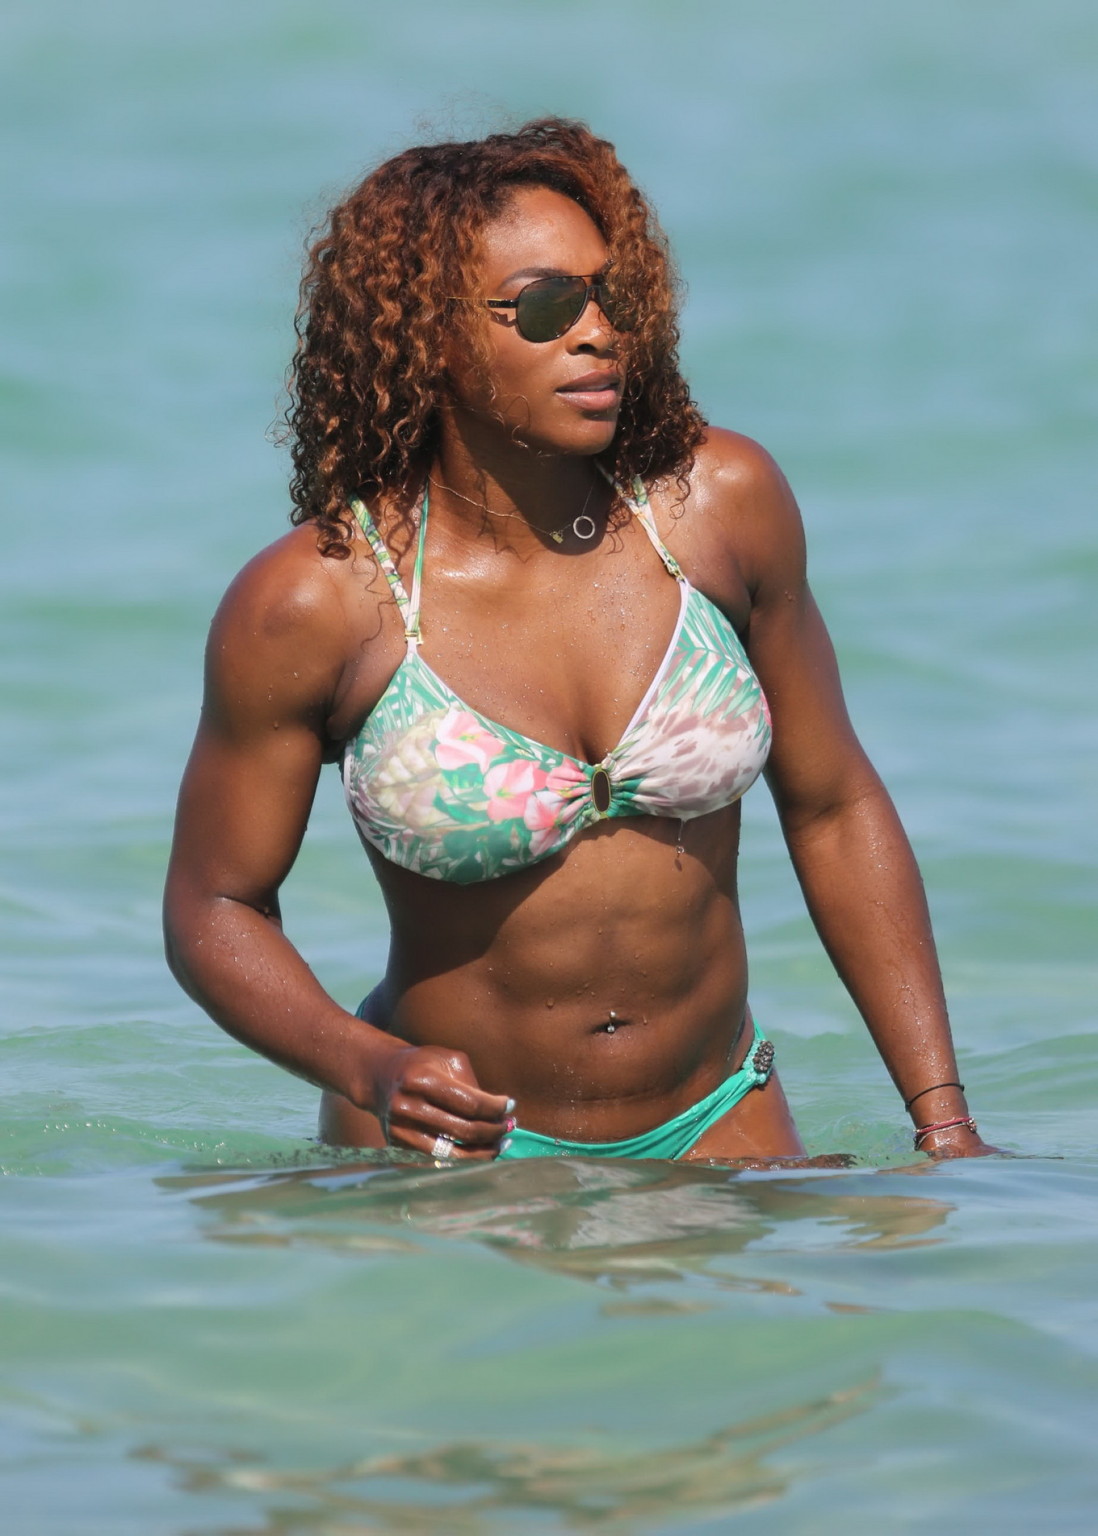 Serena williams che mostra le sue curve del bikini alla spiaggia in miami
 #75228634